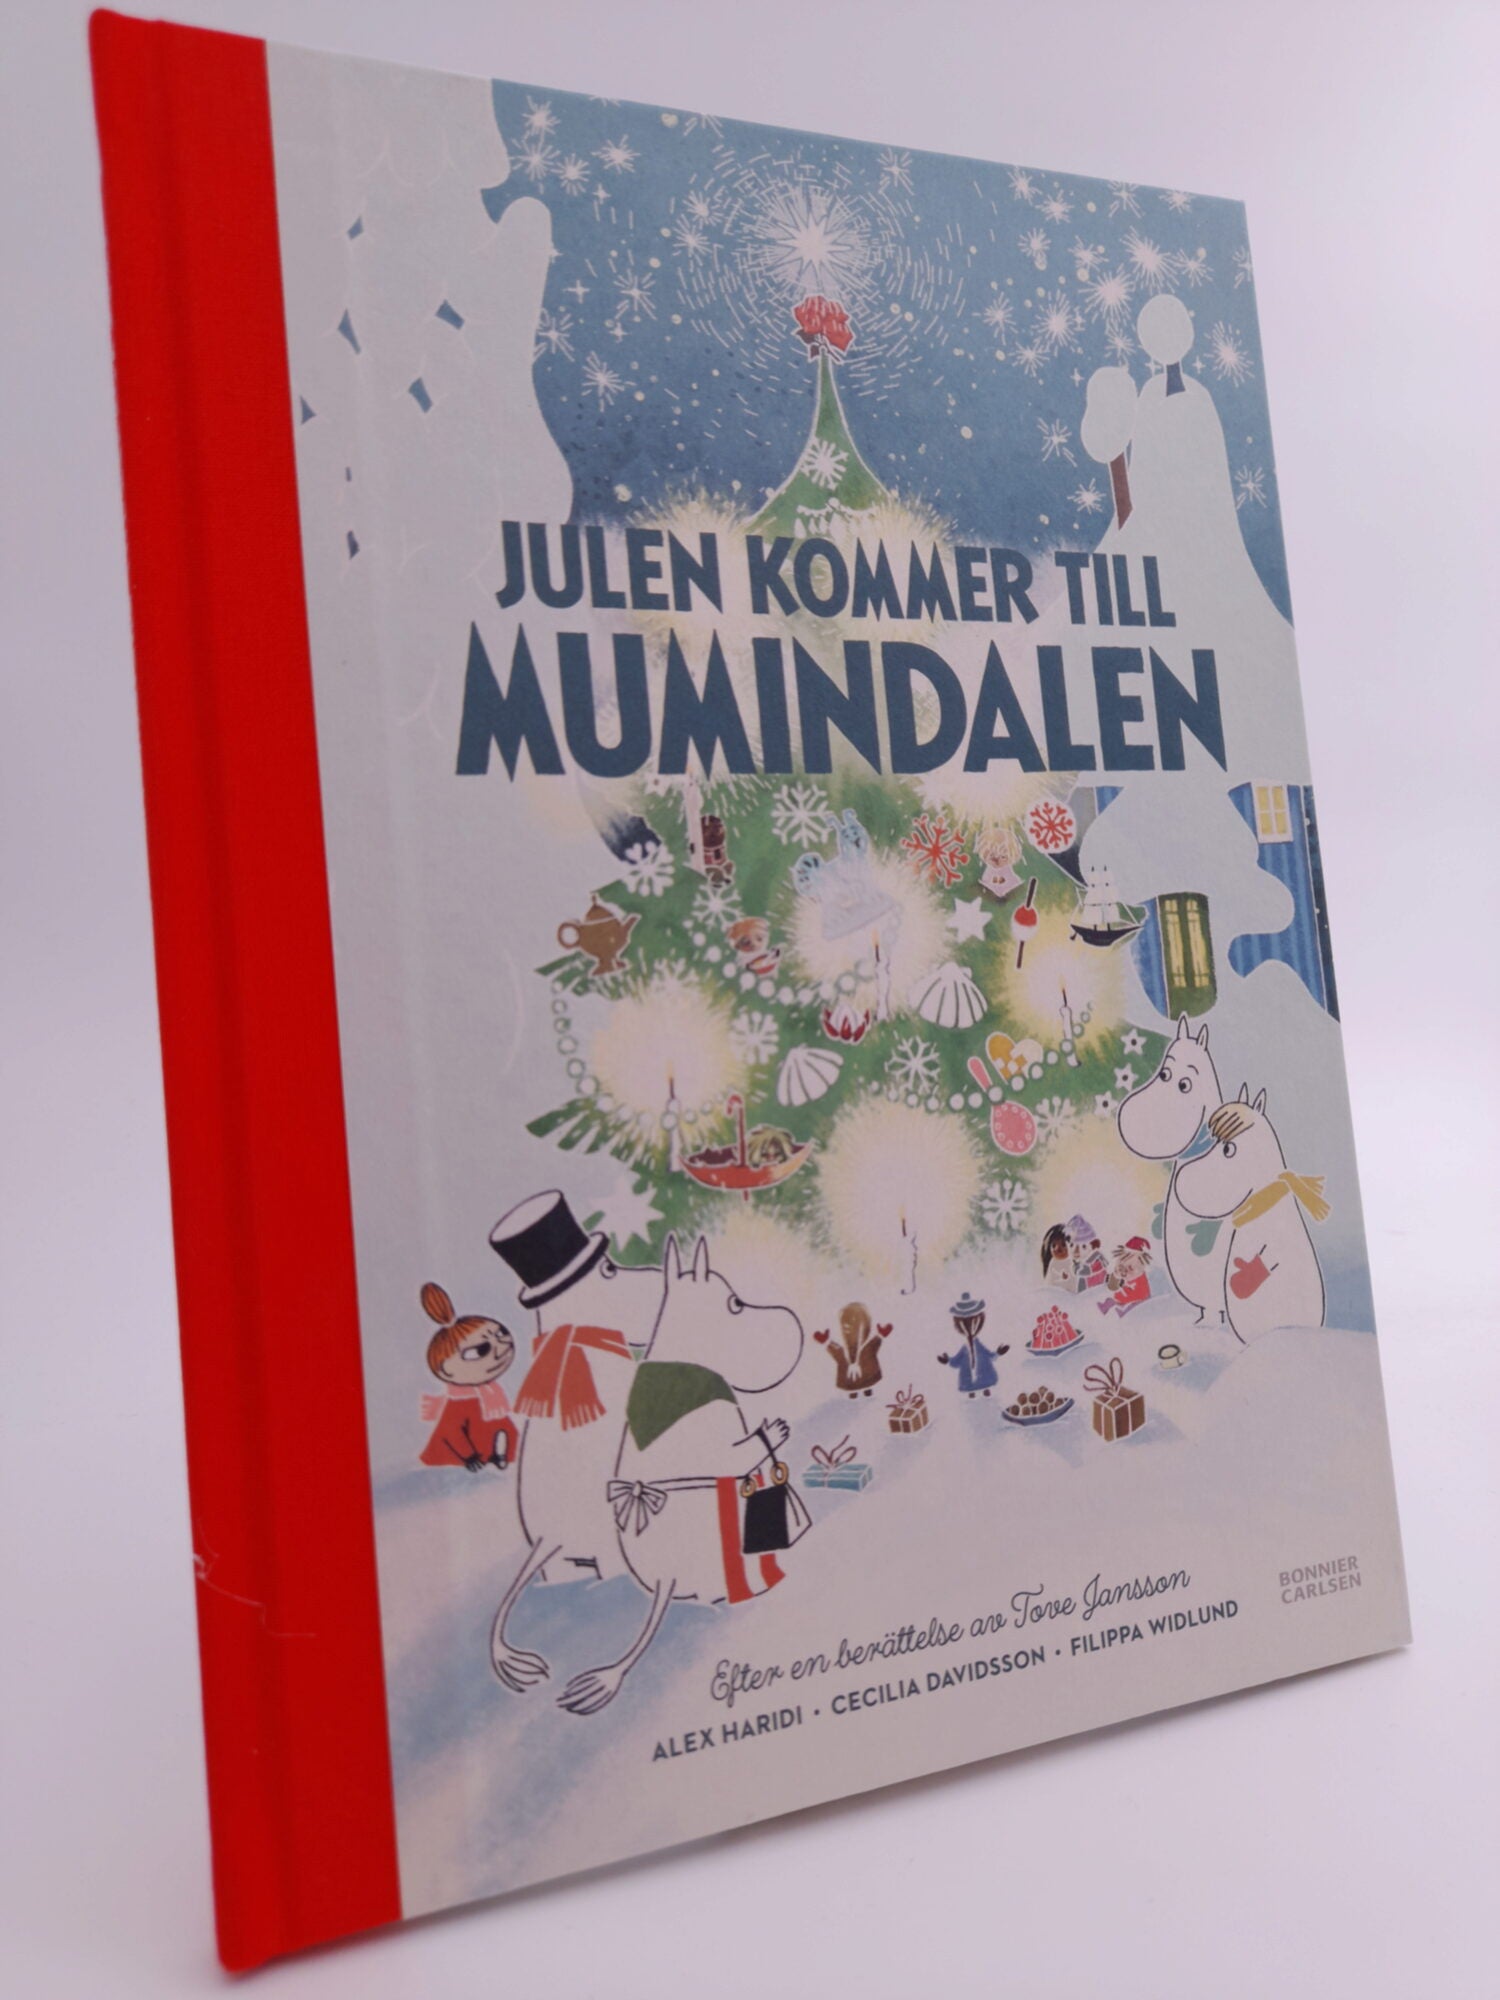 Haridi, Alex | Julen kommer till Mumindalen : Efter en berättelse av Tove Jansson